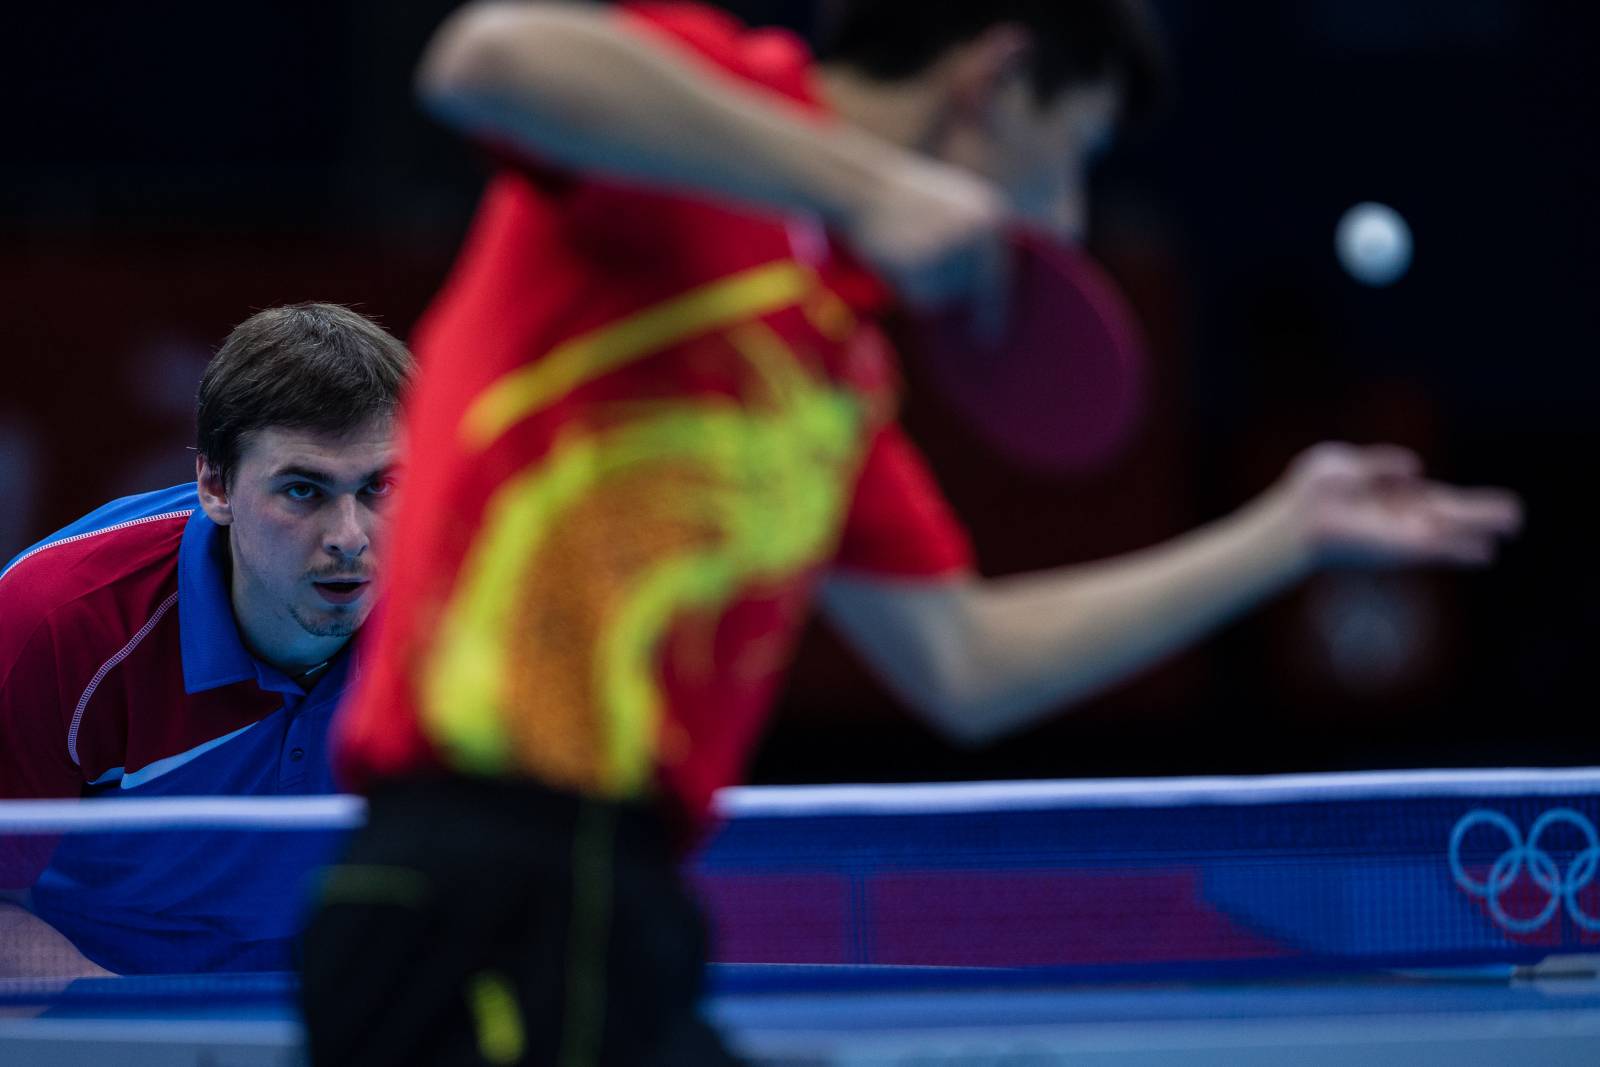 Скачков с победы начал путь на Олимпиаде в одиночном разряде